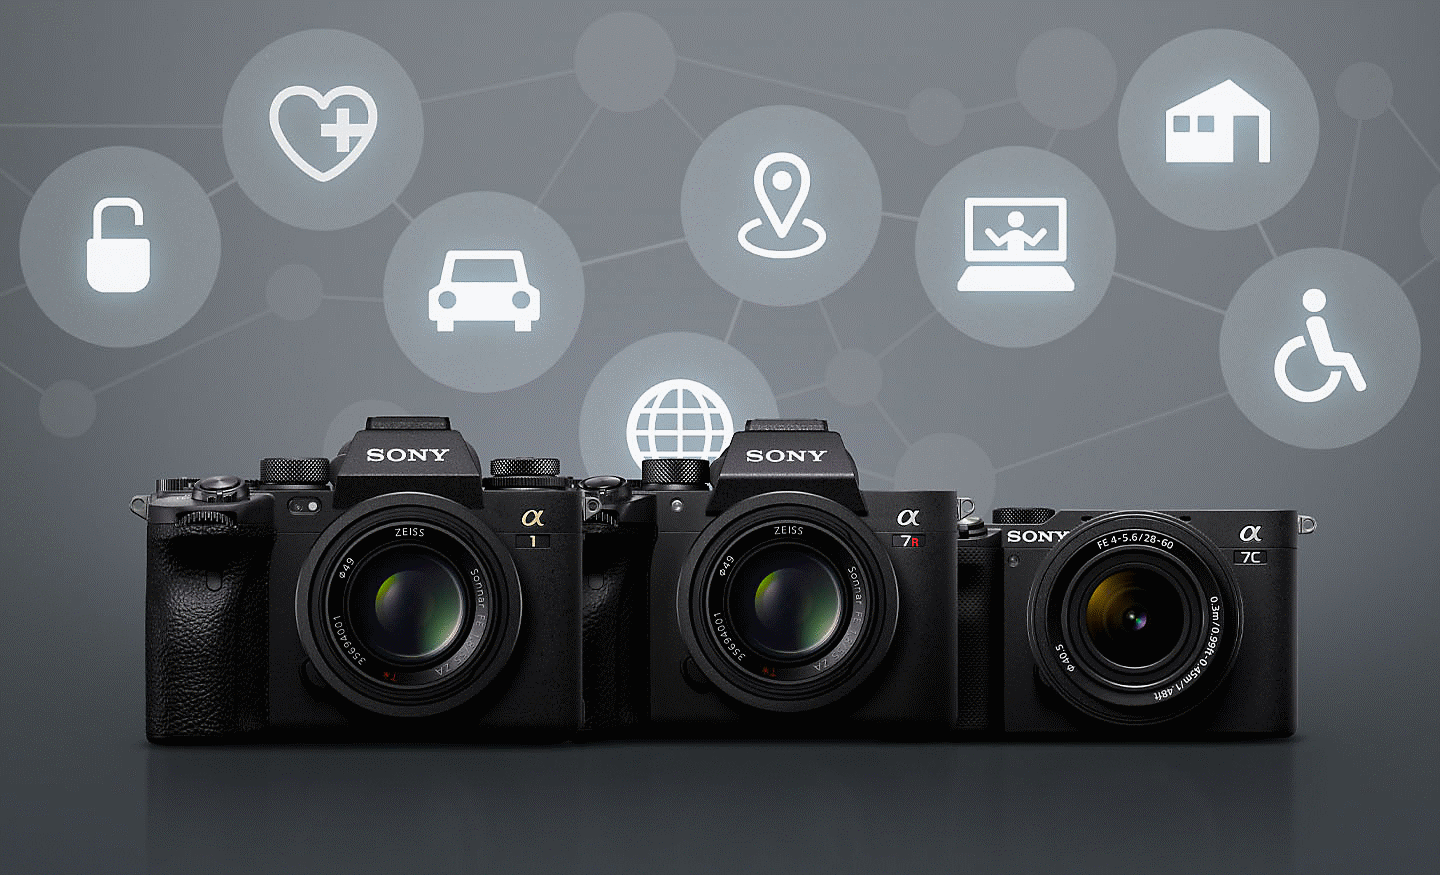 Četiri Sonyjeva fotoaparata na sivoj pozadini s raznim bijelim ikonama koje označavaju daljinsku povezivost